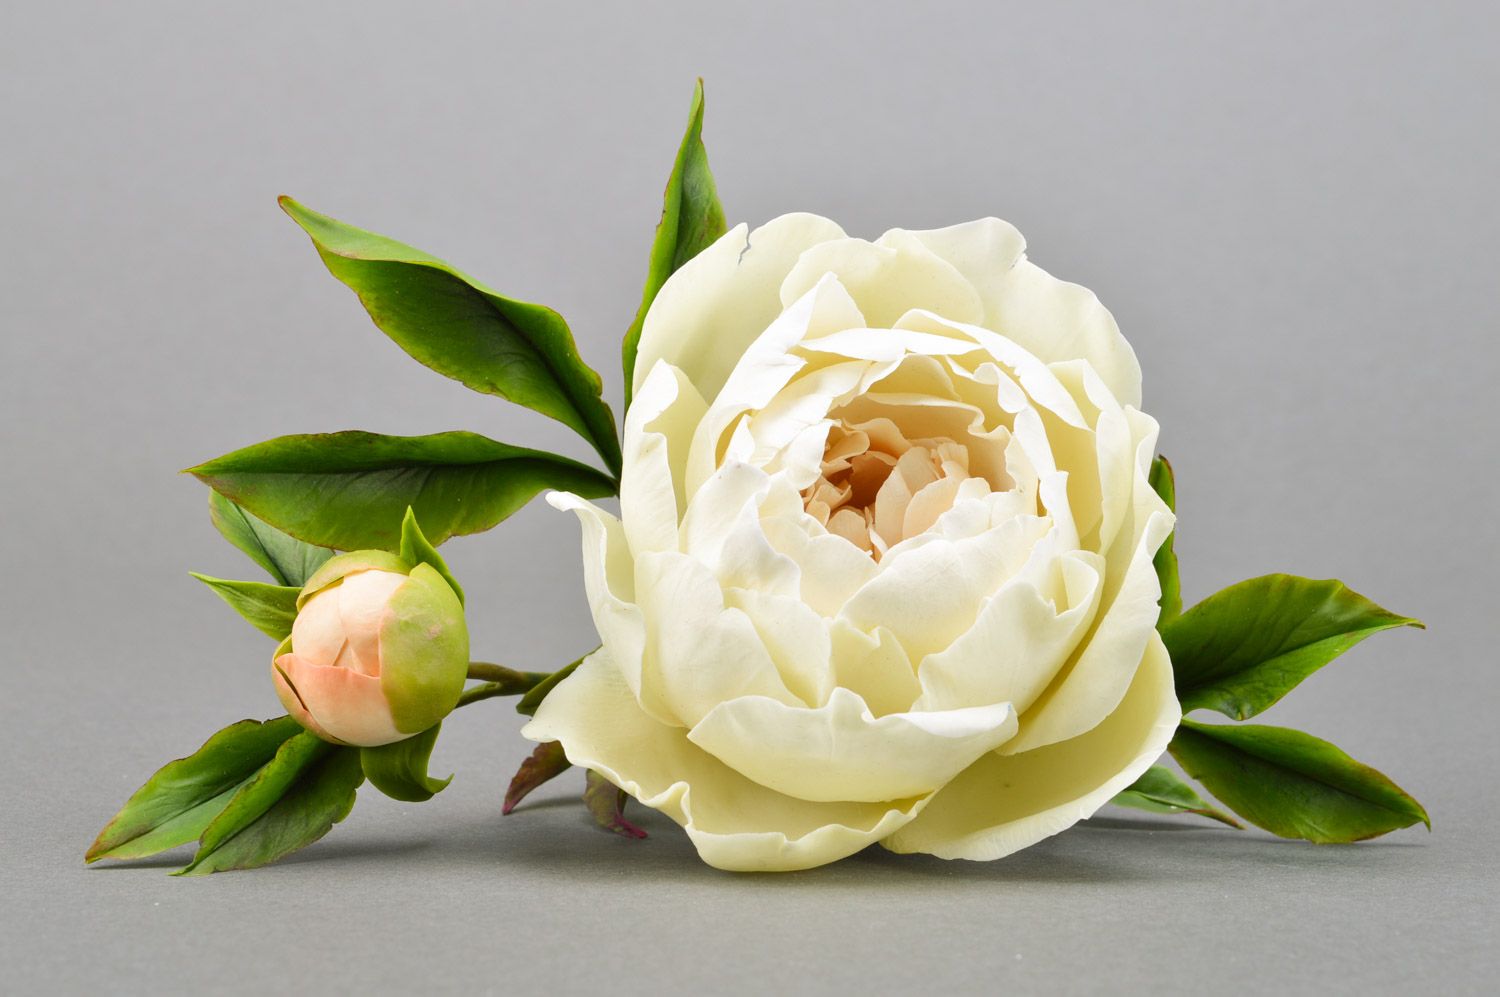 Цветок пиона из полимерной глины ручной работы белый крупный декоративный фото 3